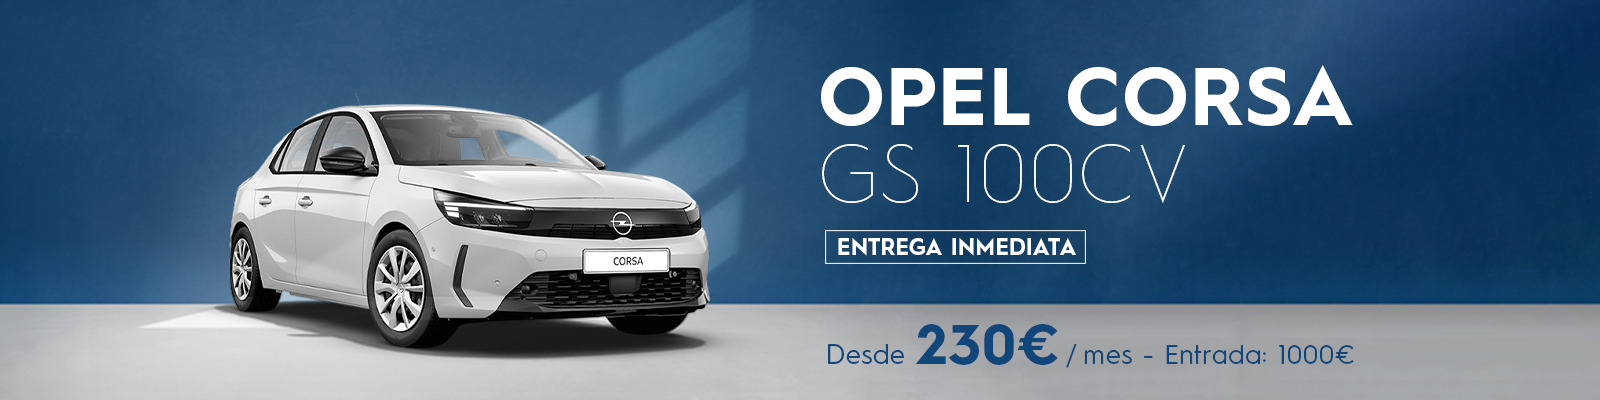 Tu Opel Corsa GS desde 230€/mes*